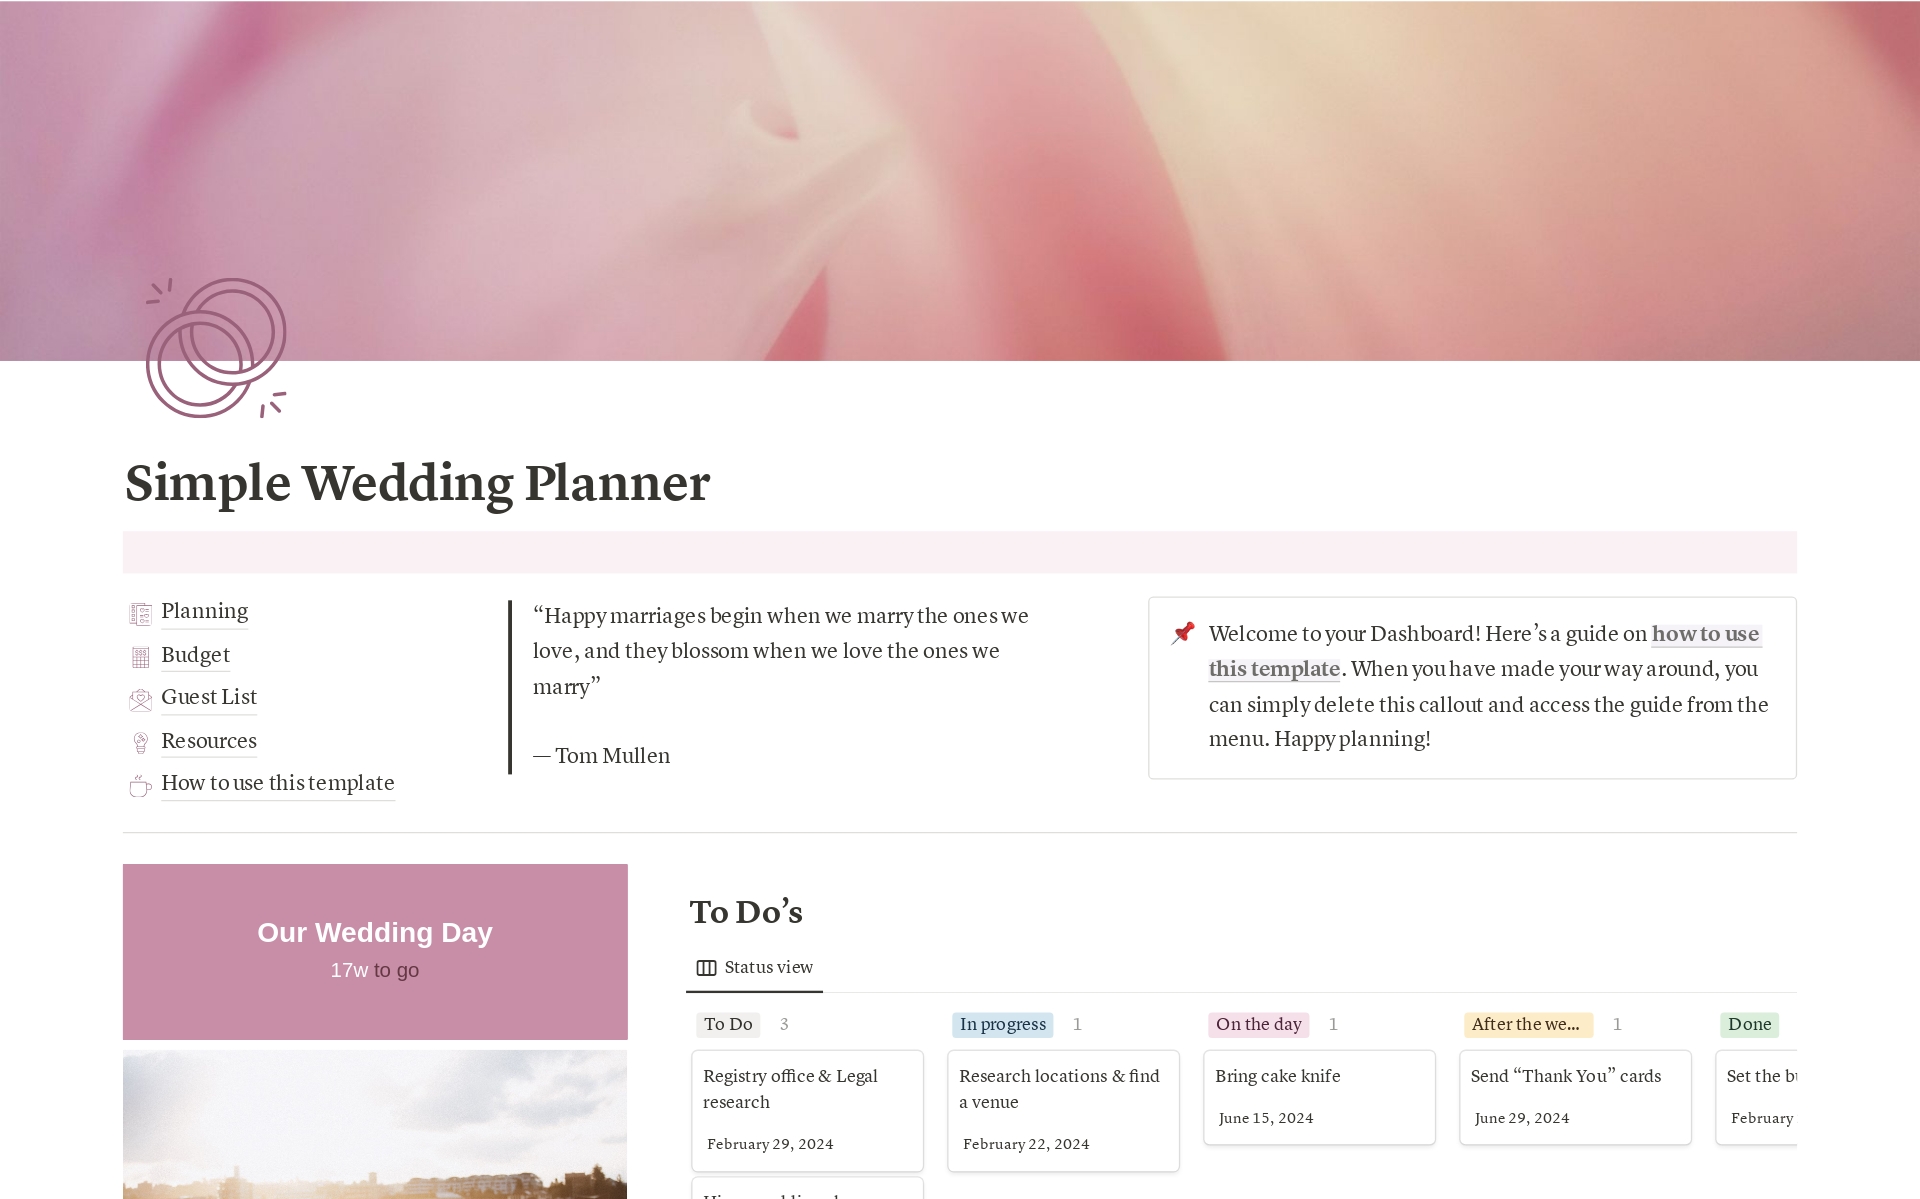 Uma prévia do modelo para Simple Wedding Planner